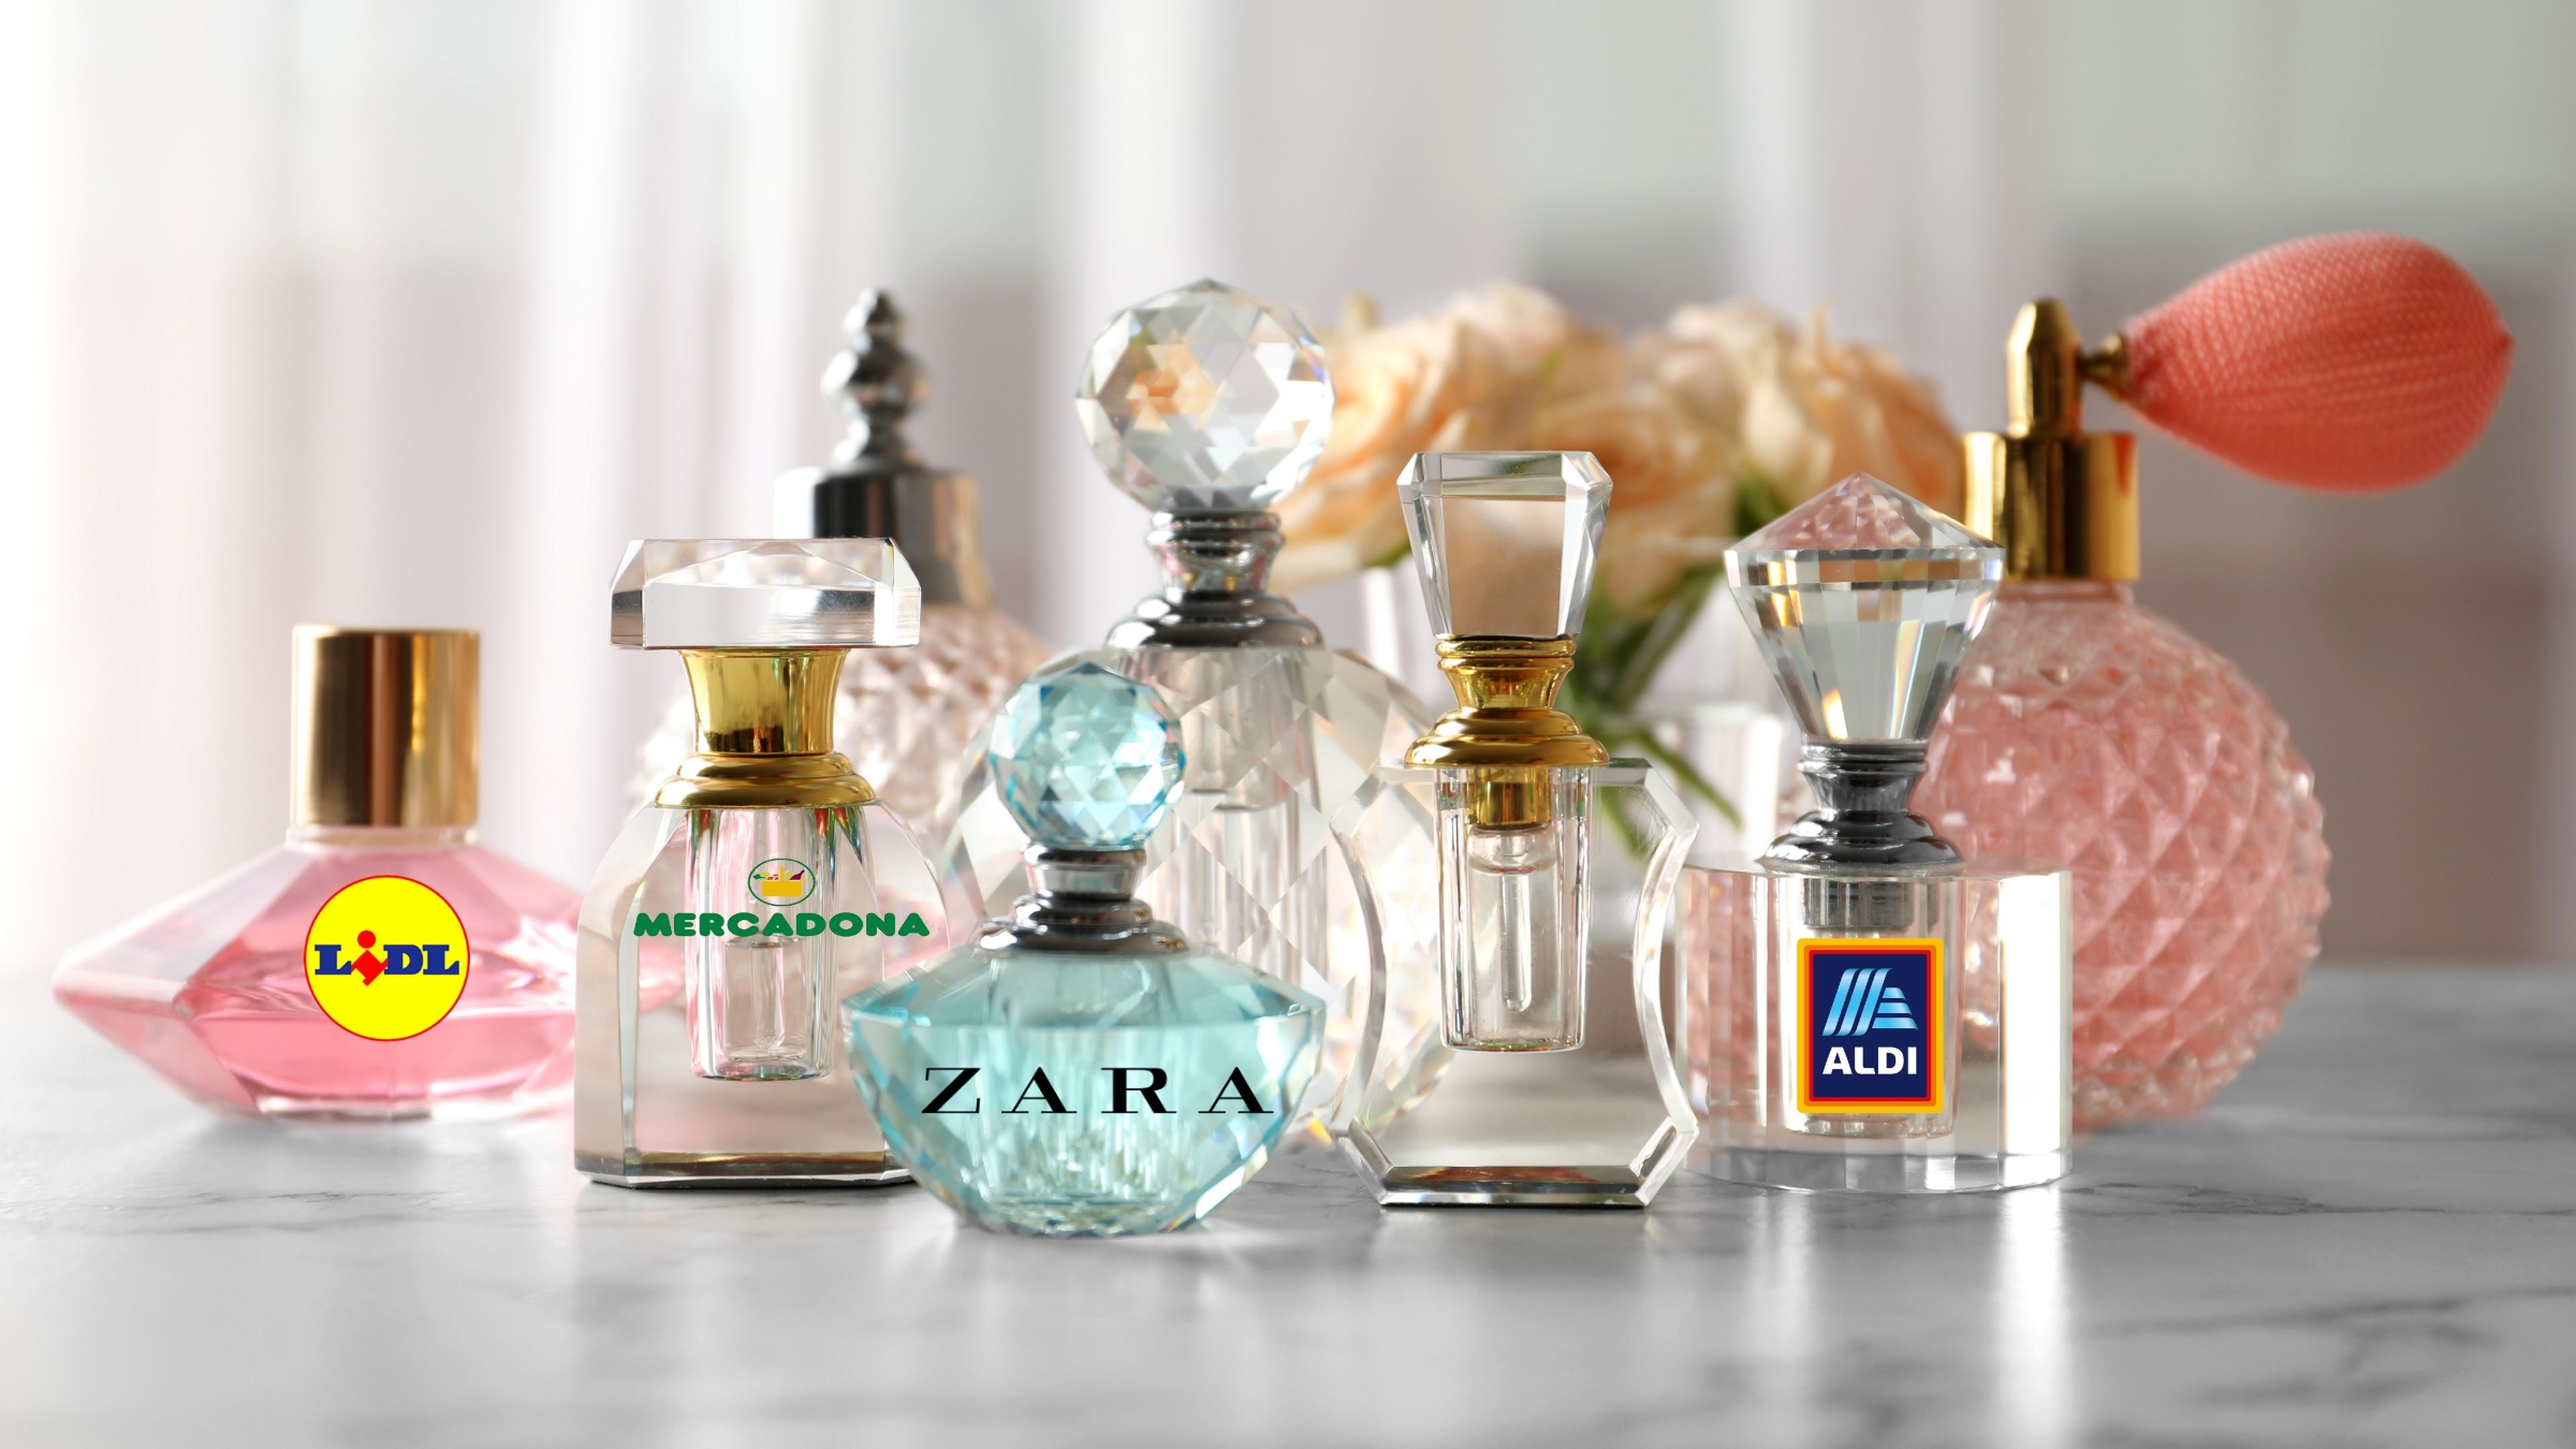 Las mejores equivalencias de los perfumes y colonias de Mercadona, Lidl, Zara y Aldi